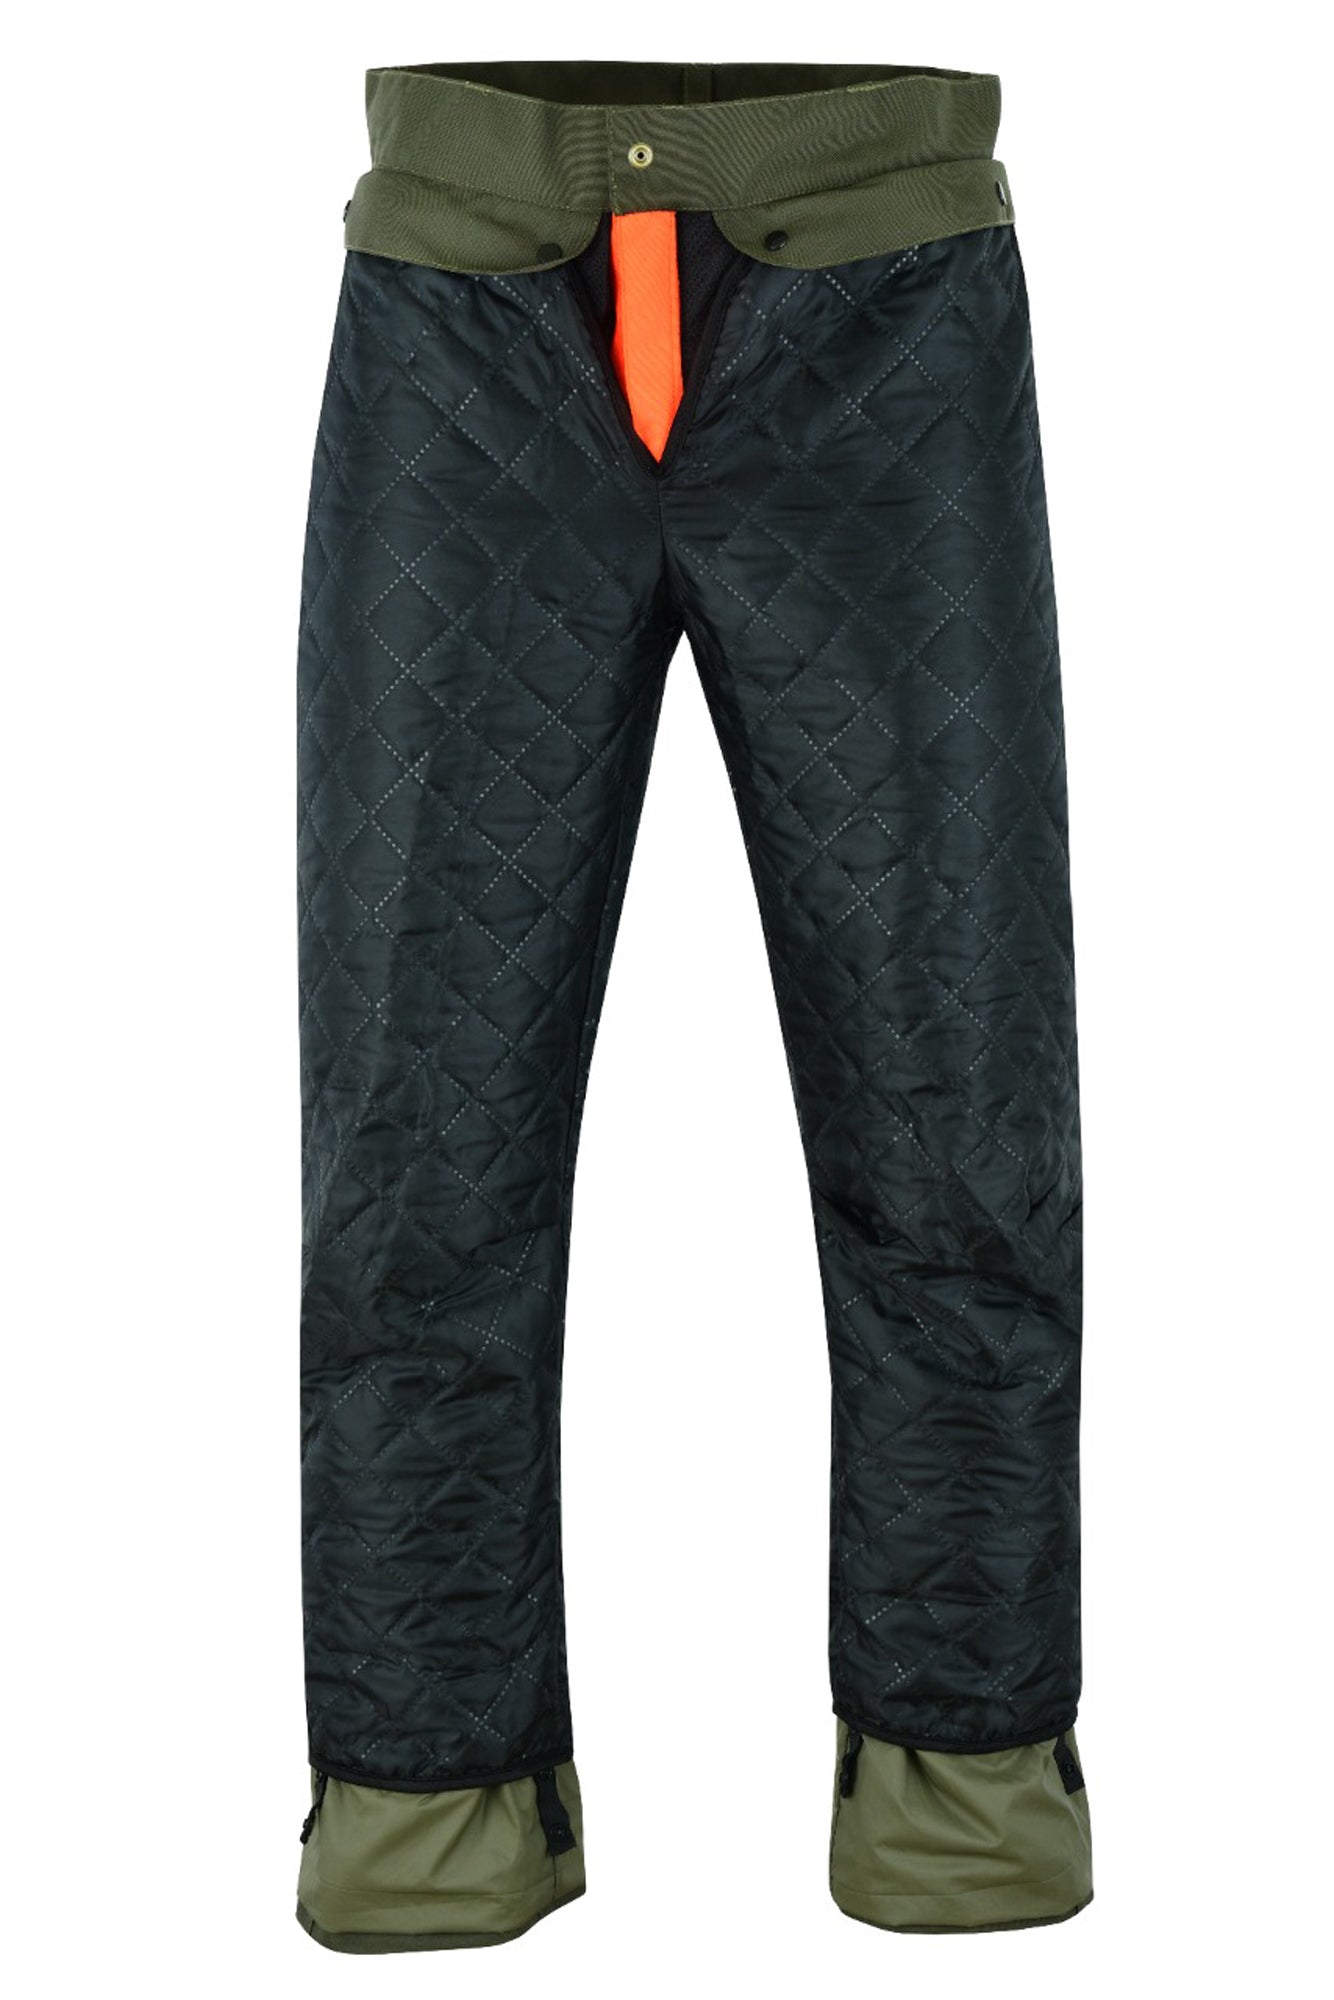 Pantalone da caccia KONUSTEX MAXGAME 2.0 impermeabile con imbottitura rimovibile verde arancione  OnTheRoad.shop - KONUSTEX